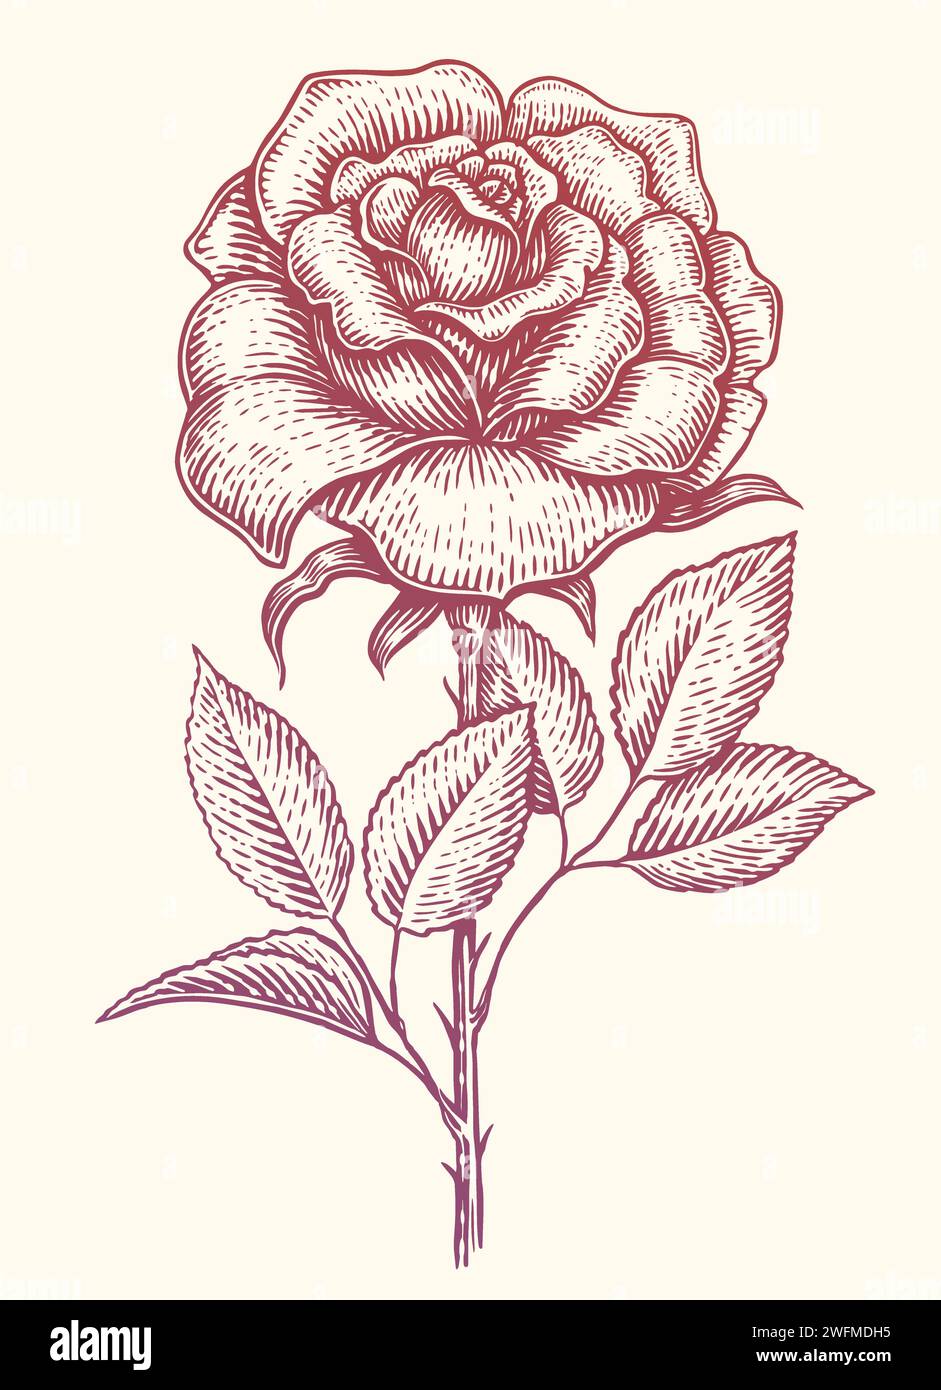 Rose mit Blättern am Stiel. Gartenblume. Handgezeichnete Vintage-Skizze Vektor-Illustration Stock Vektor